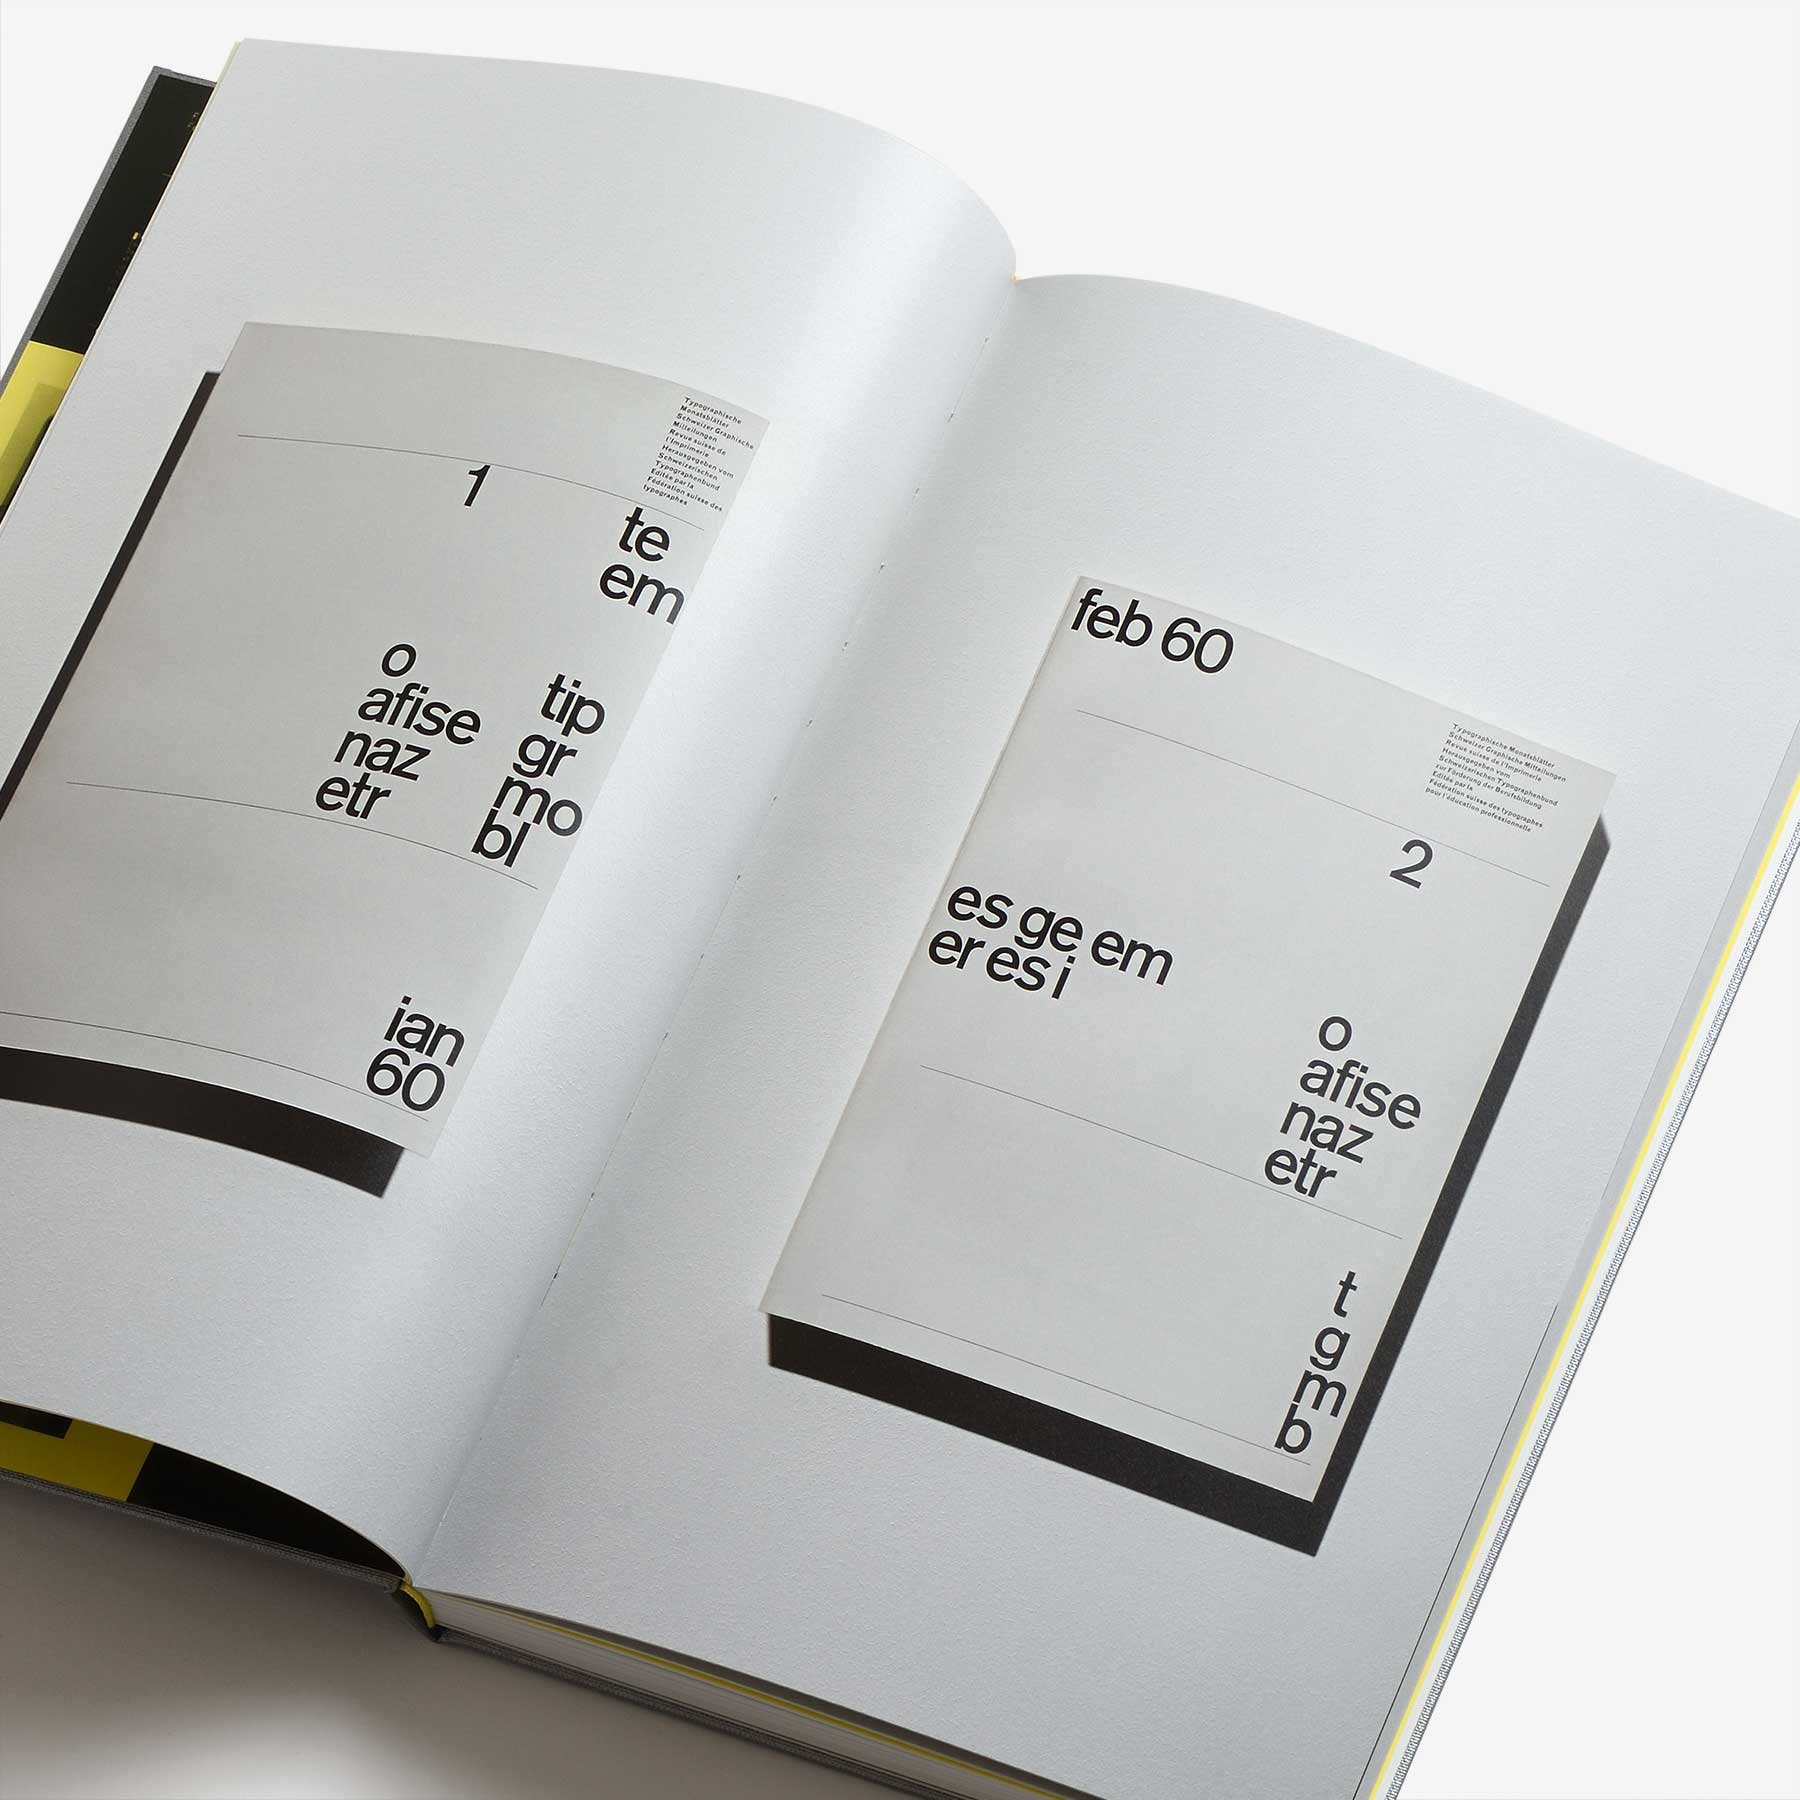 30 Years of Swiss Typographic Discourse in the Typografische Monatsblätter